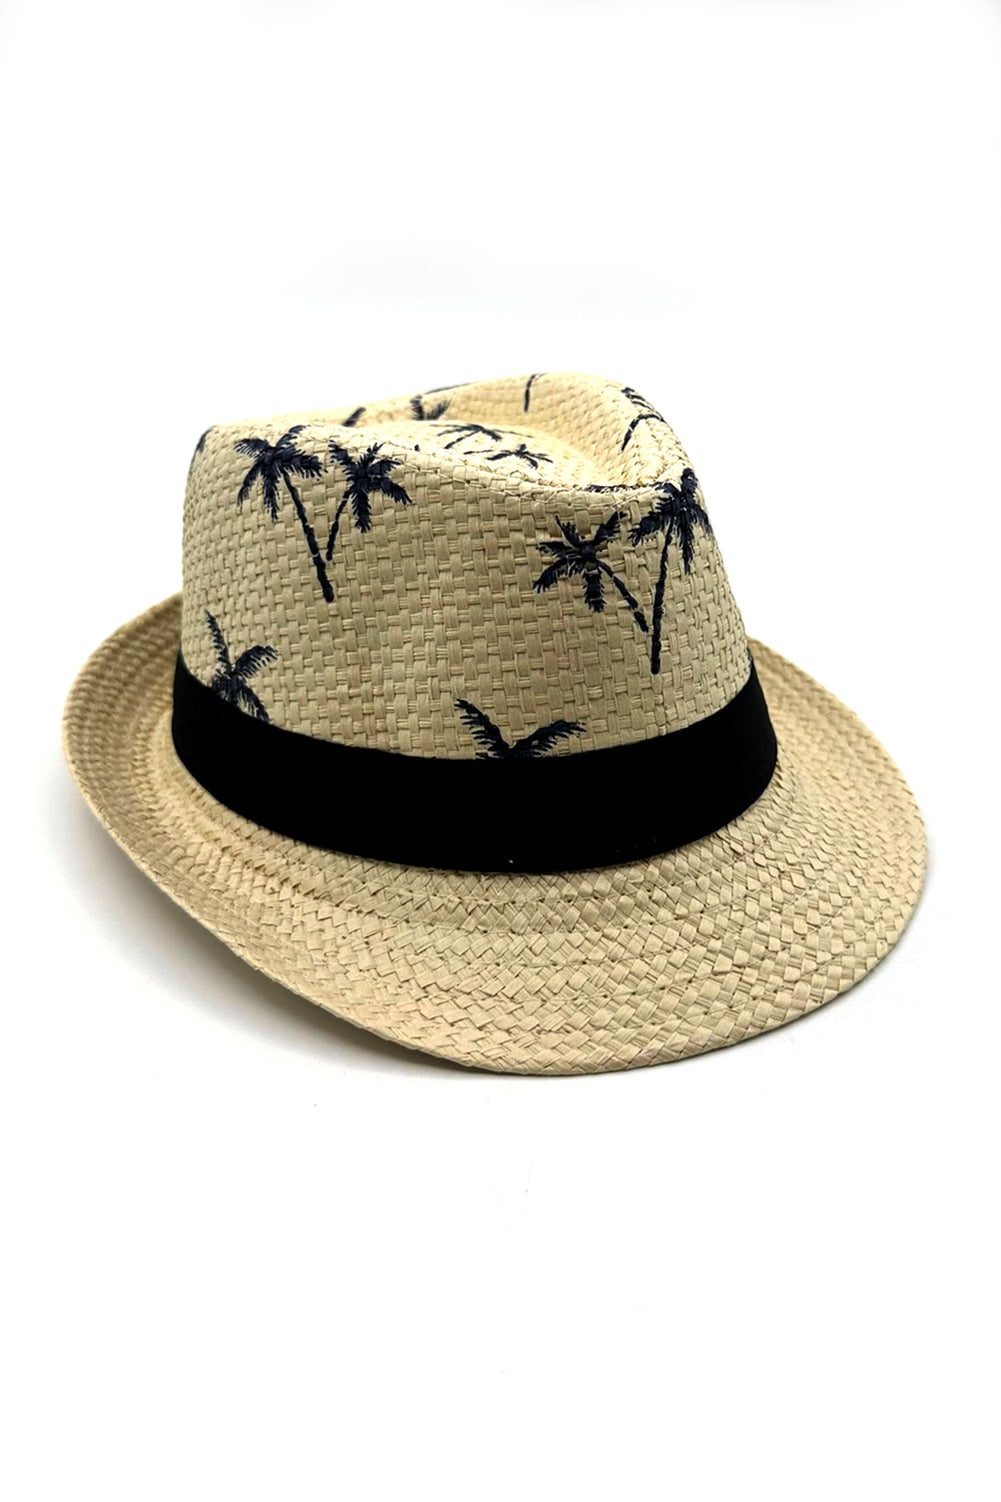 Kids Beige Summer Straw Palm Tree Hat Fedora Beach Sun Hat